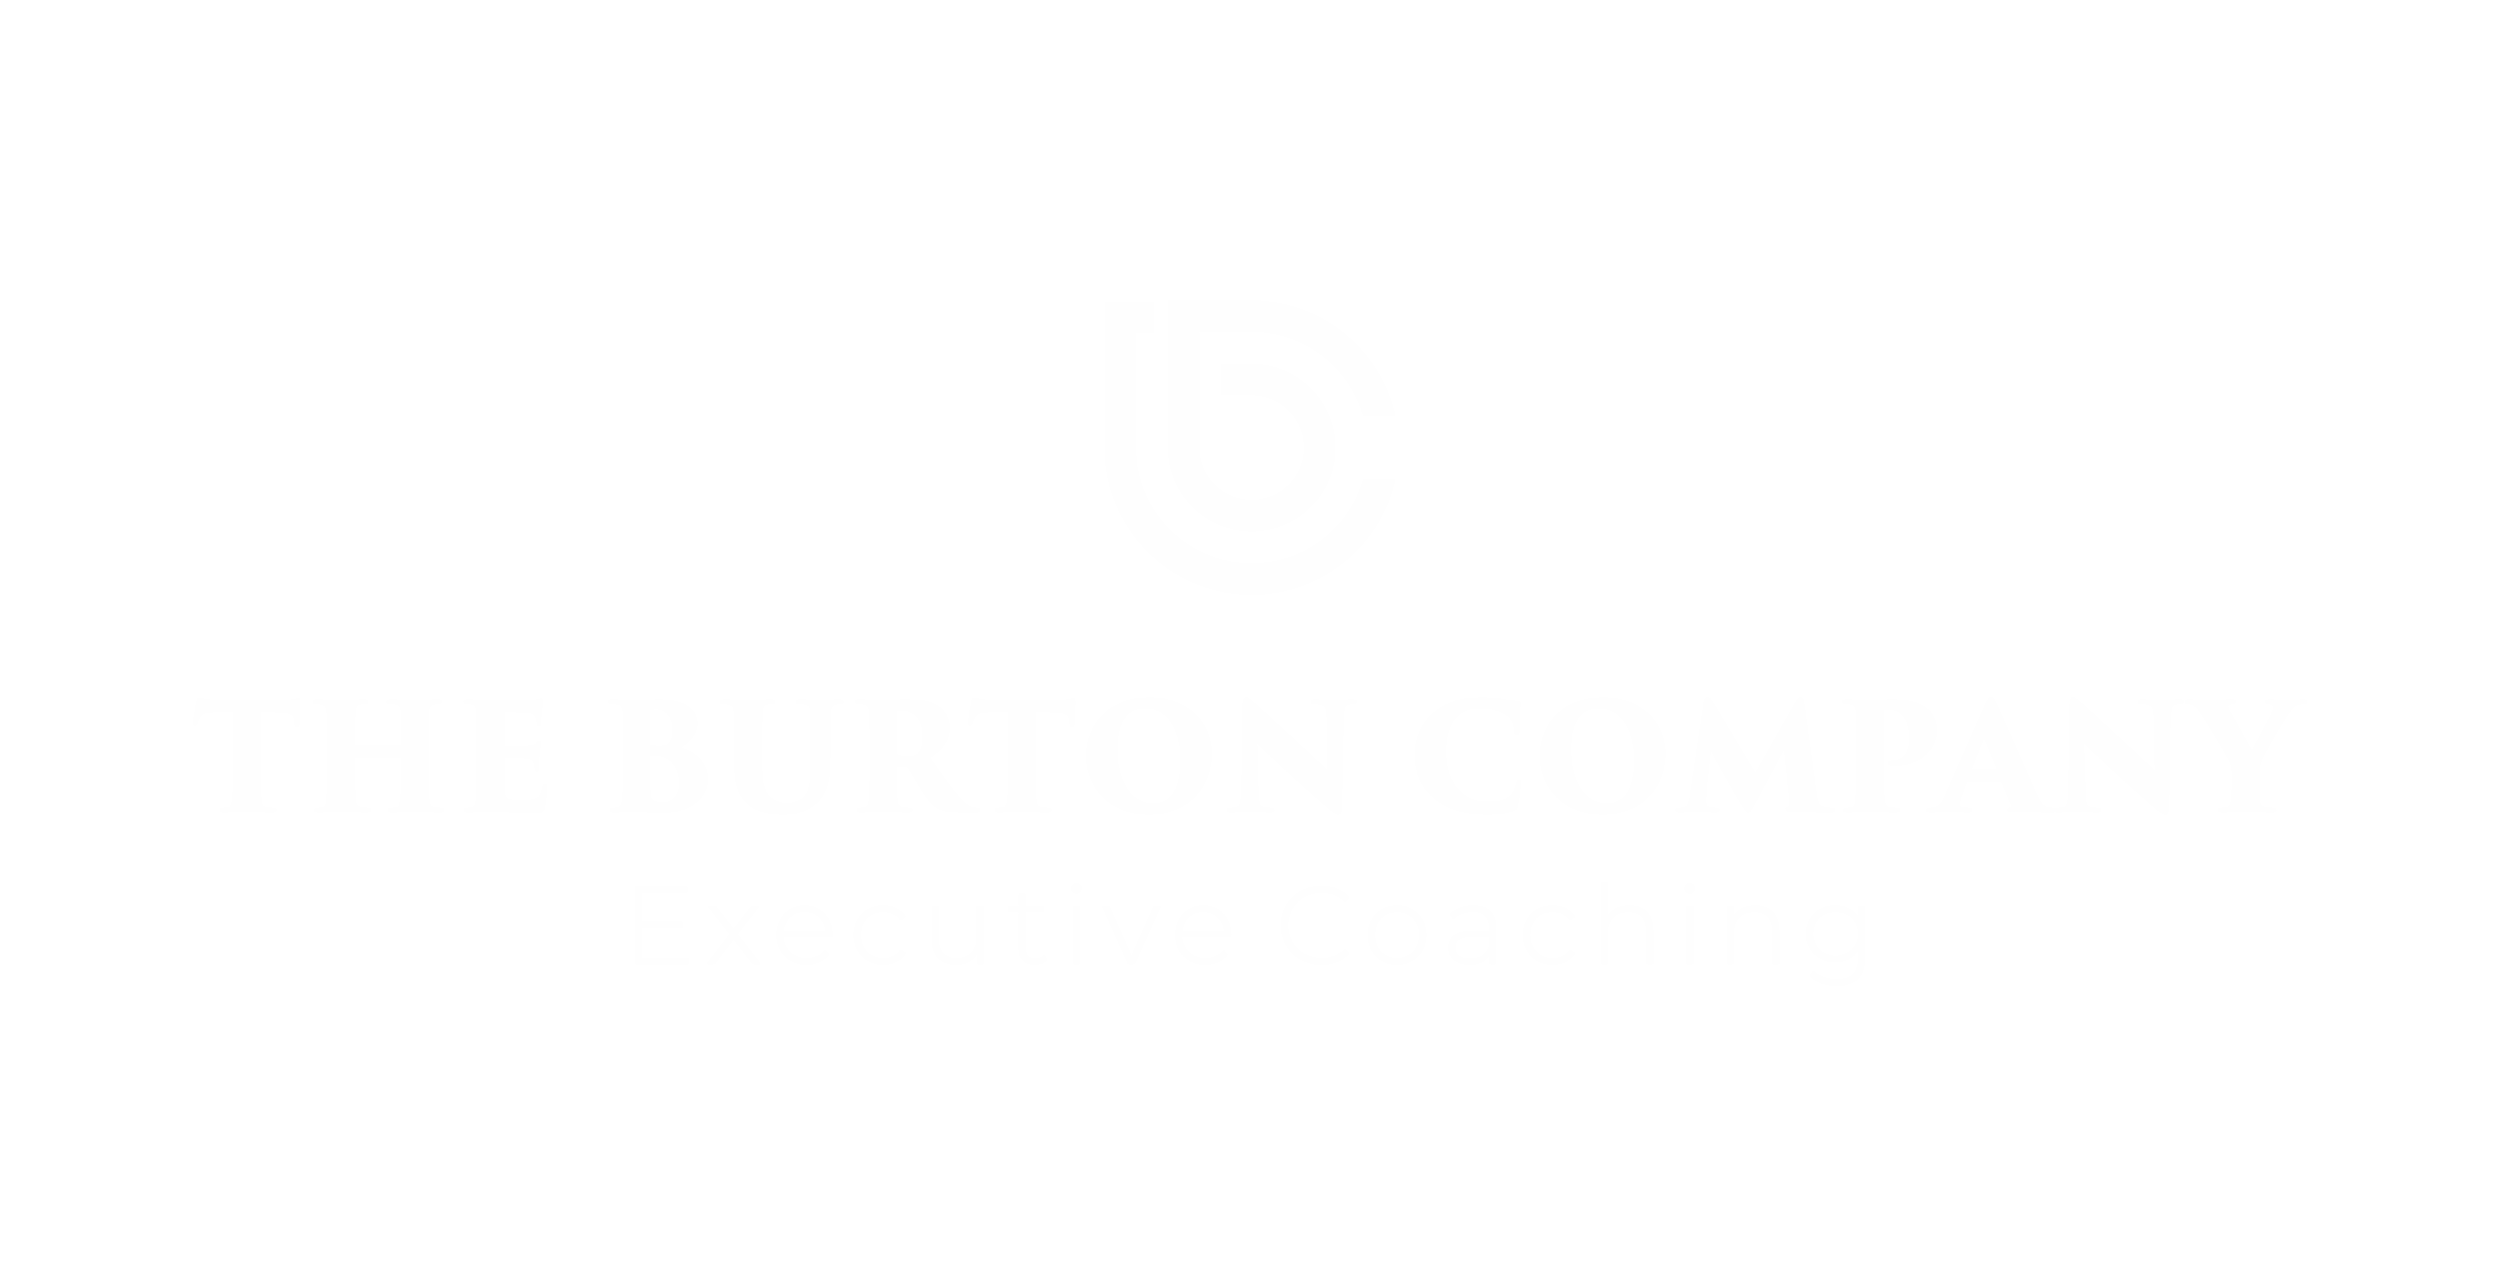 The Burton Company